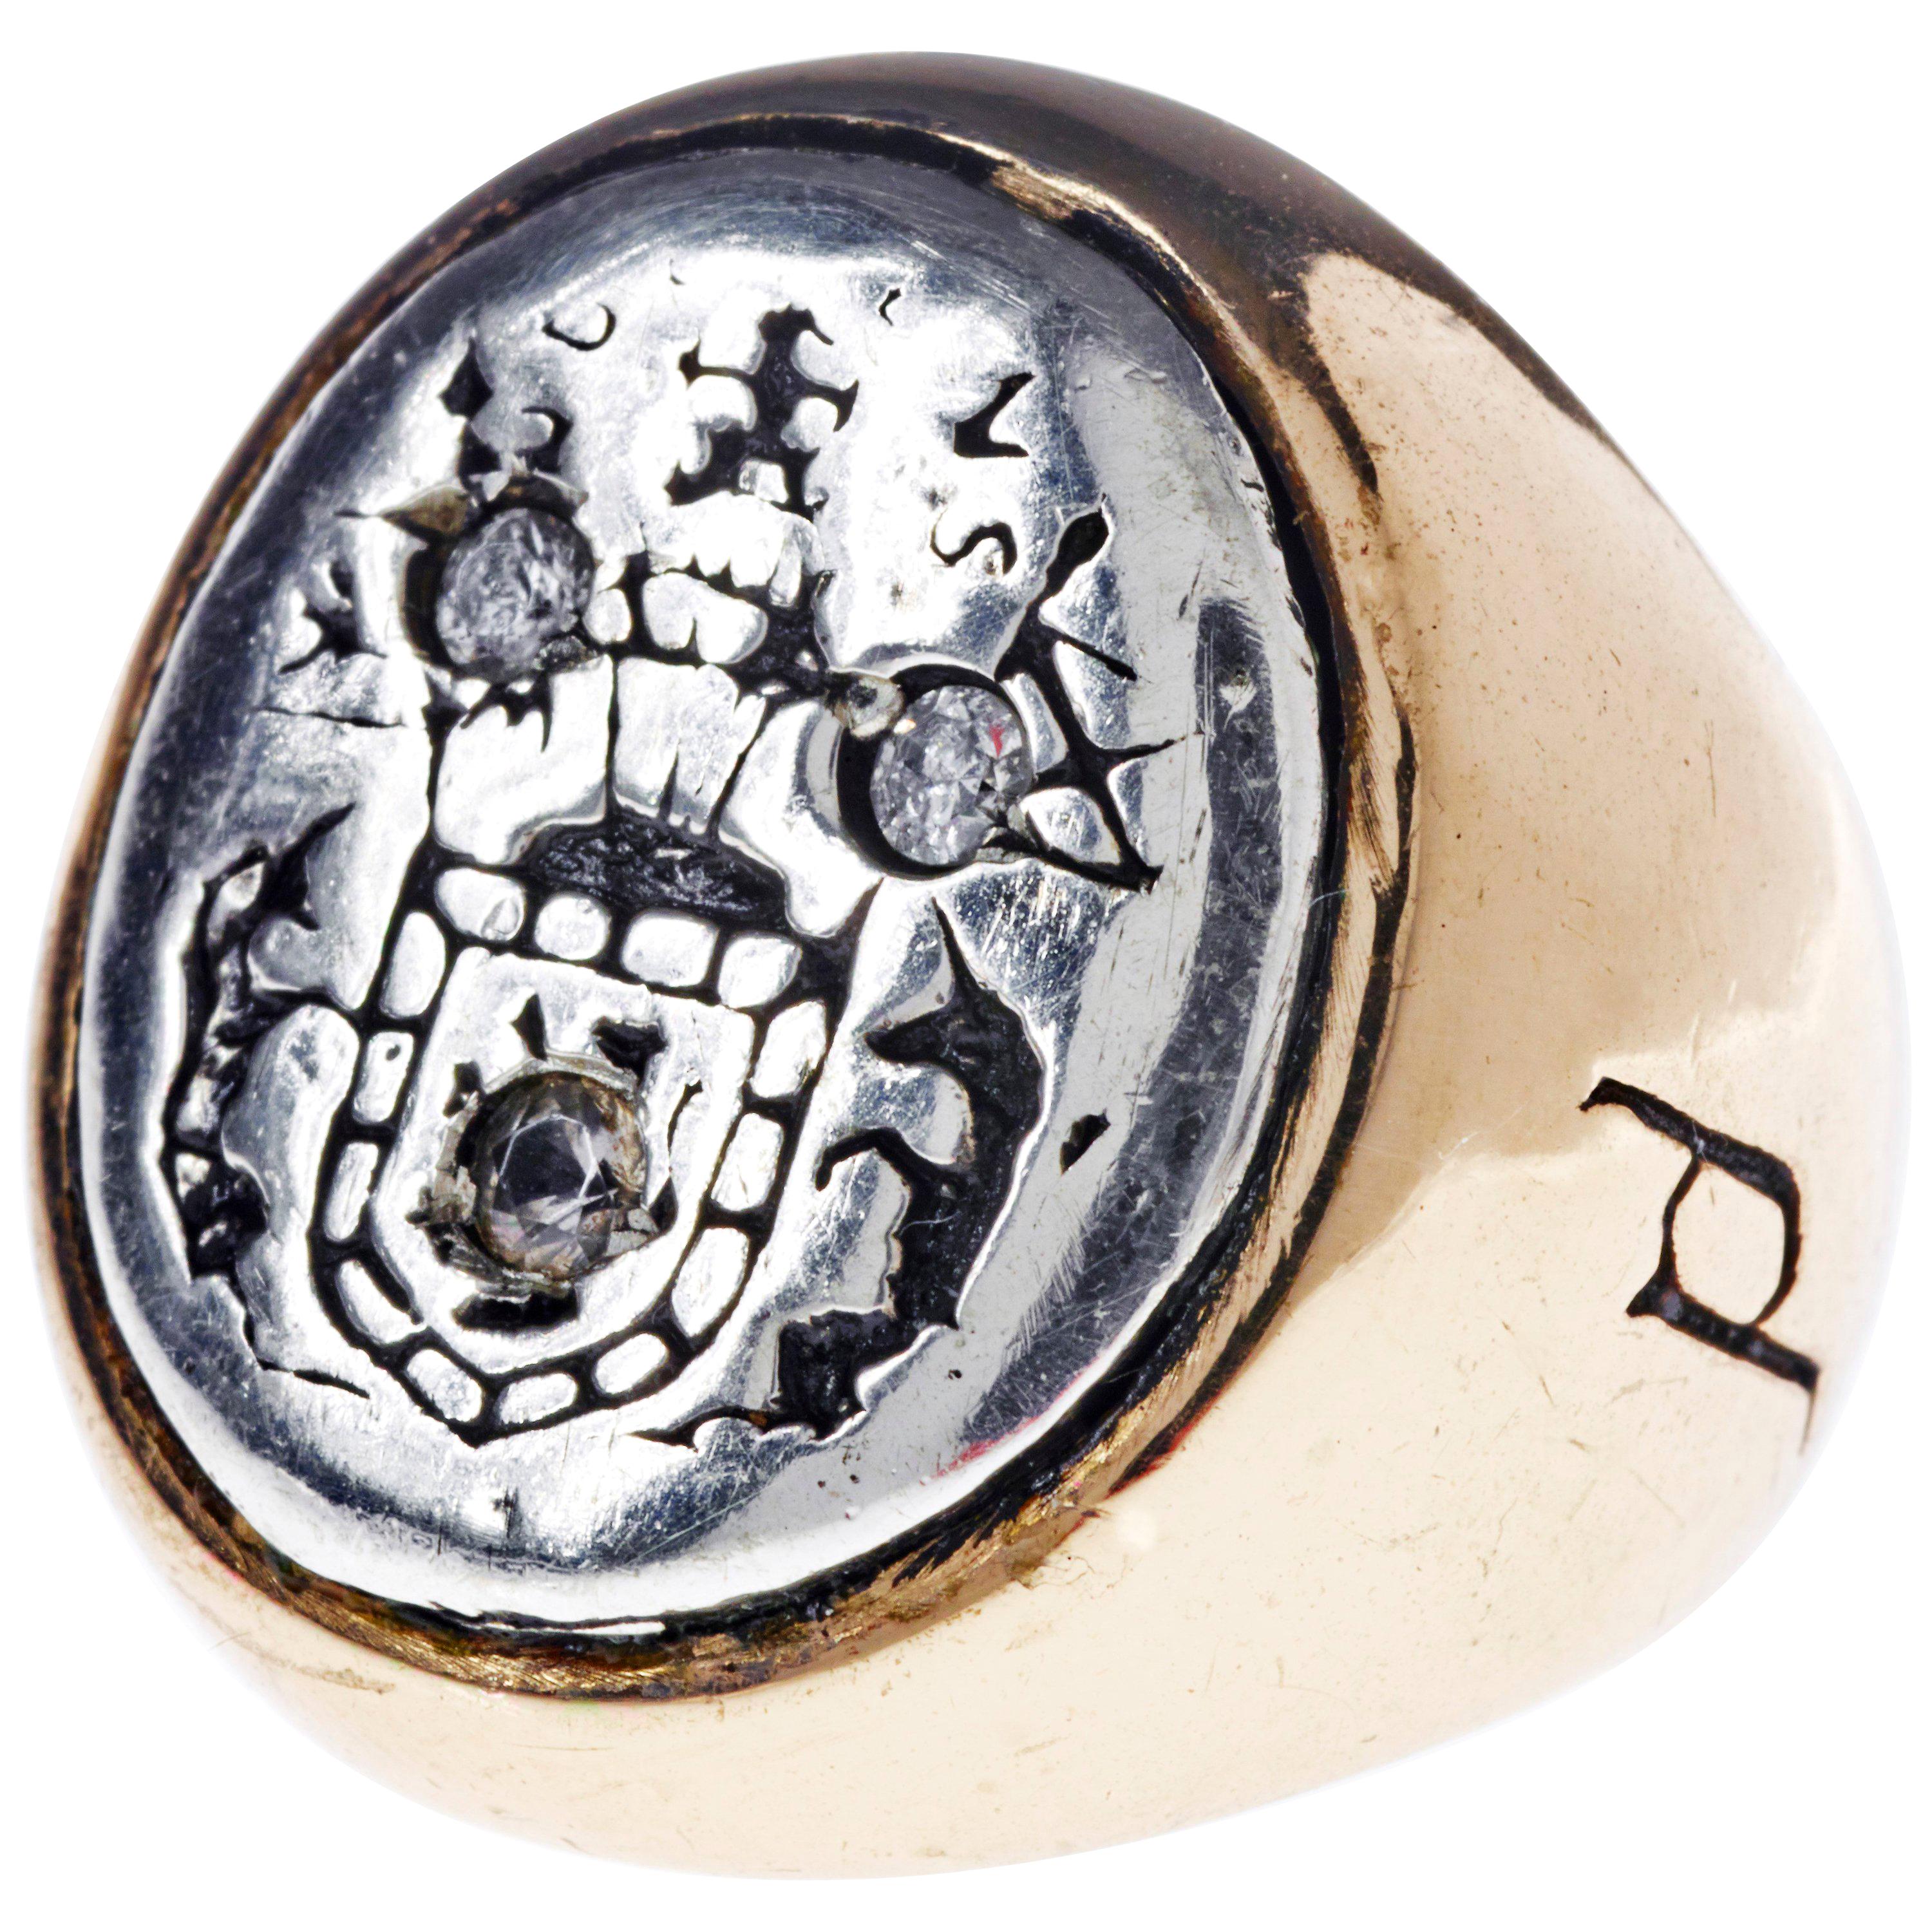 Aquamarin Wappen Siegelring Sterling Silber Bronze J Dauphin kann von Frauen oder Männern getragen werden.

Inspiriert durch den Ring der Königin Maria von Schottland. Goldener Siegelring; graviert; Schultern mit Blumen und Blättern verziert. Ovale